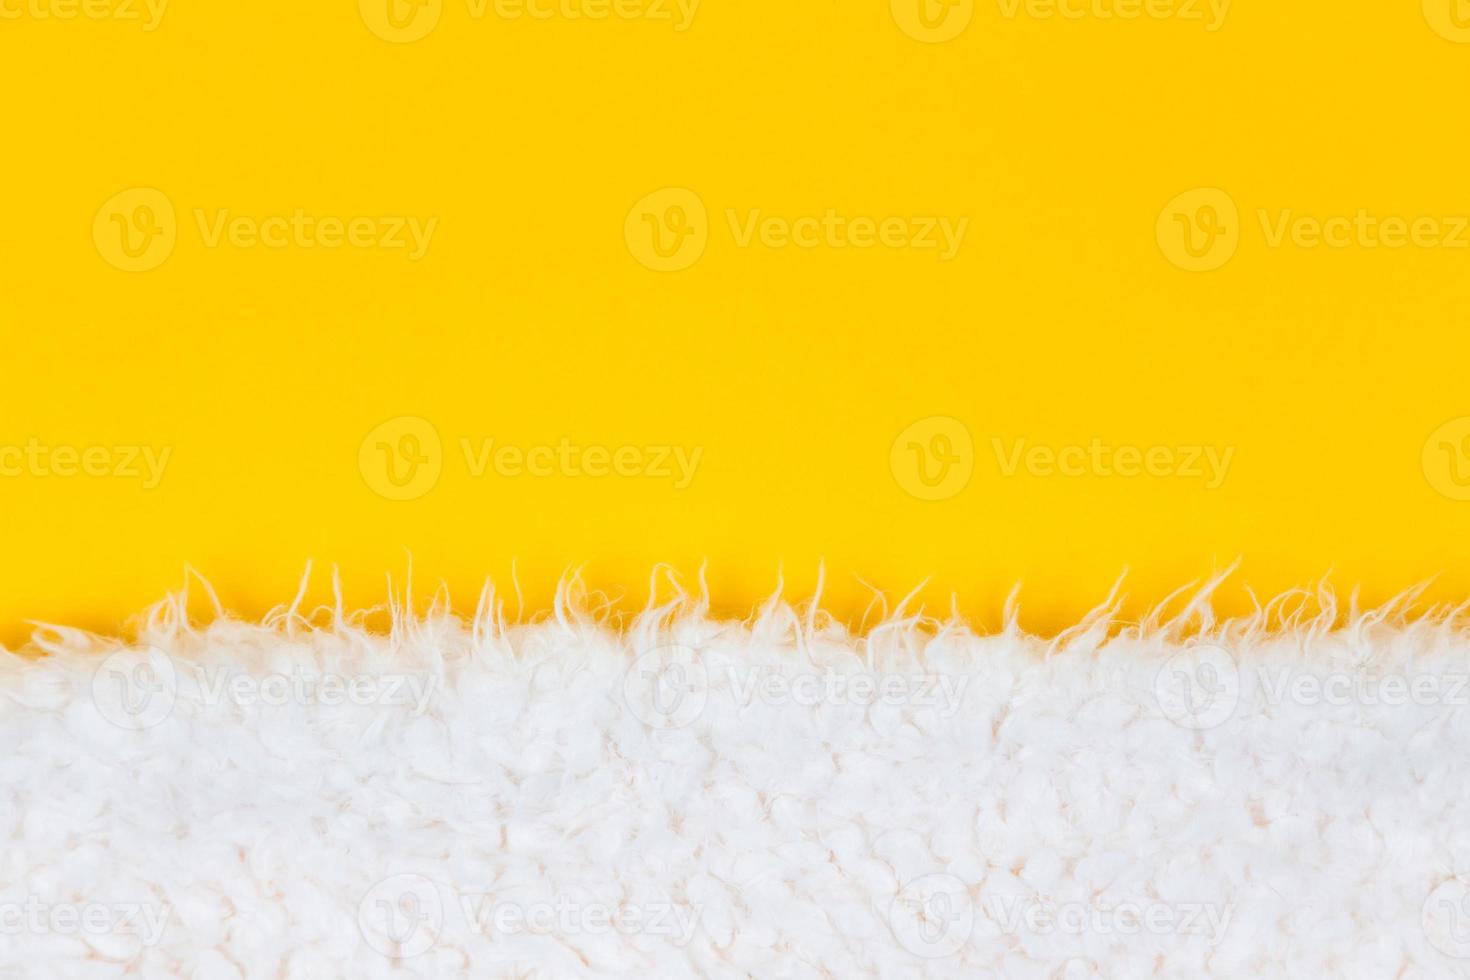 primo piano bianco soffice pelliccia di lana di pecora su sfondo giallo foto